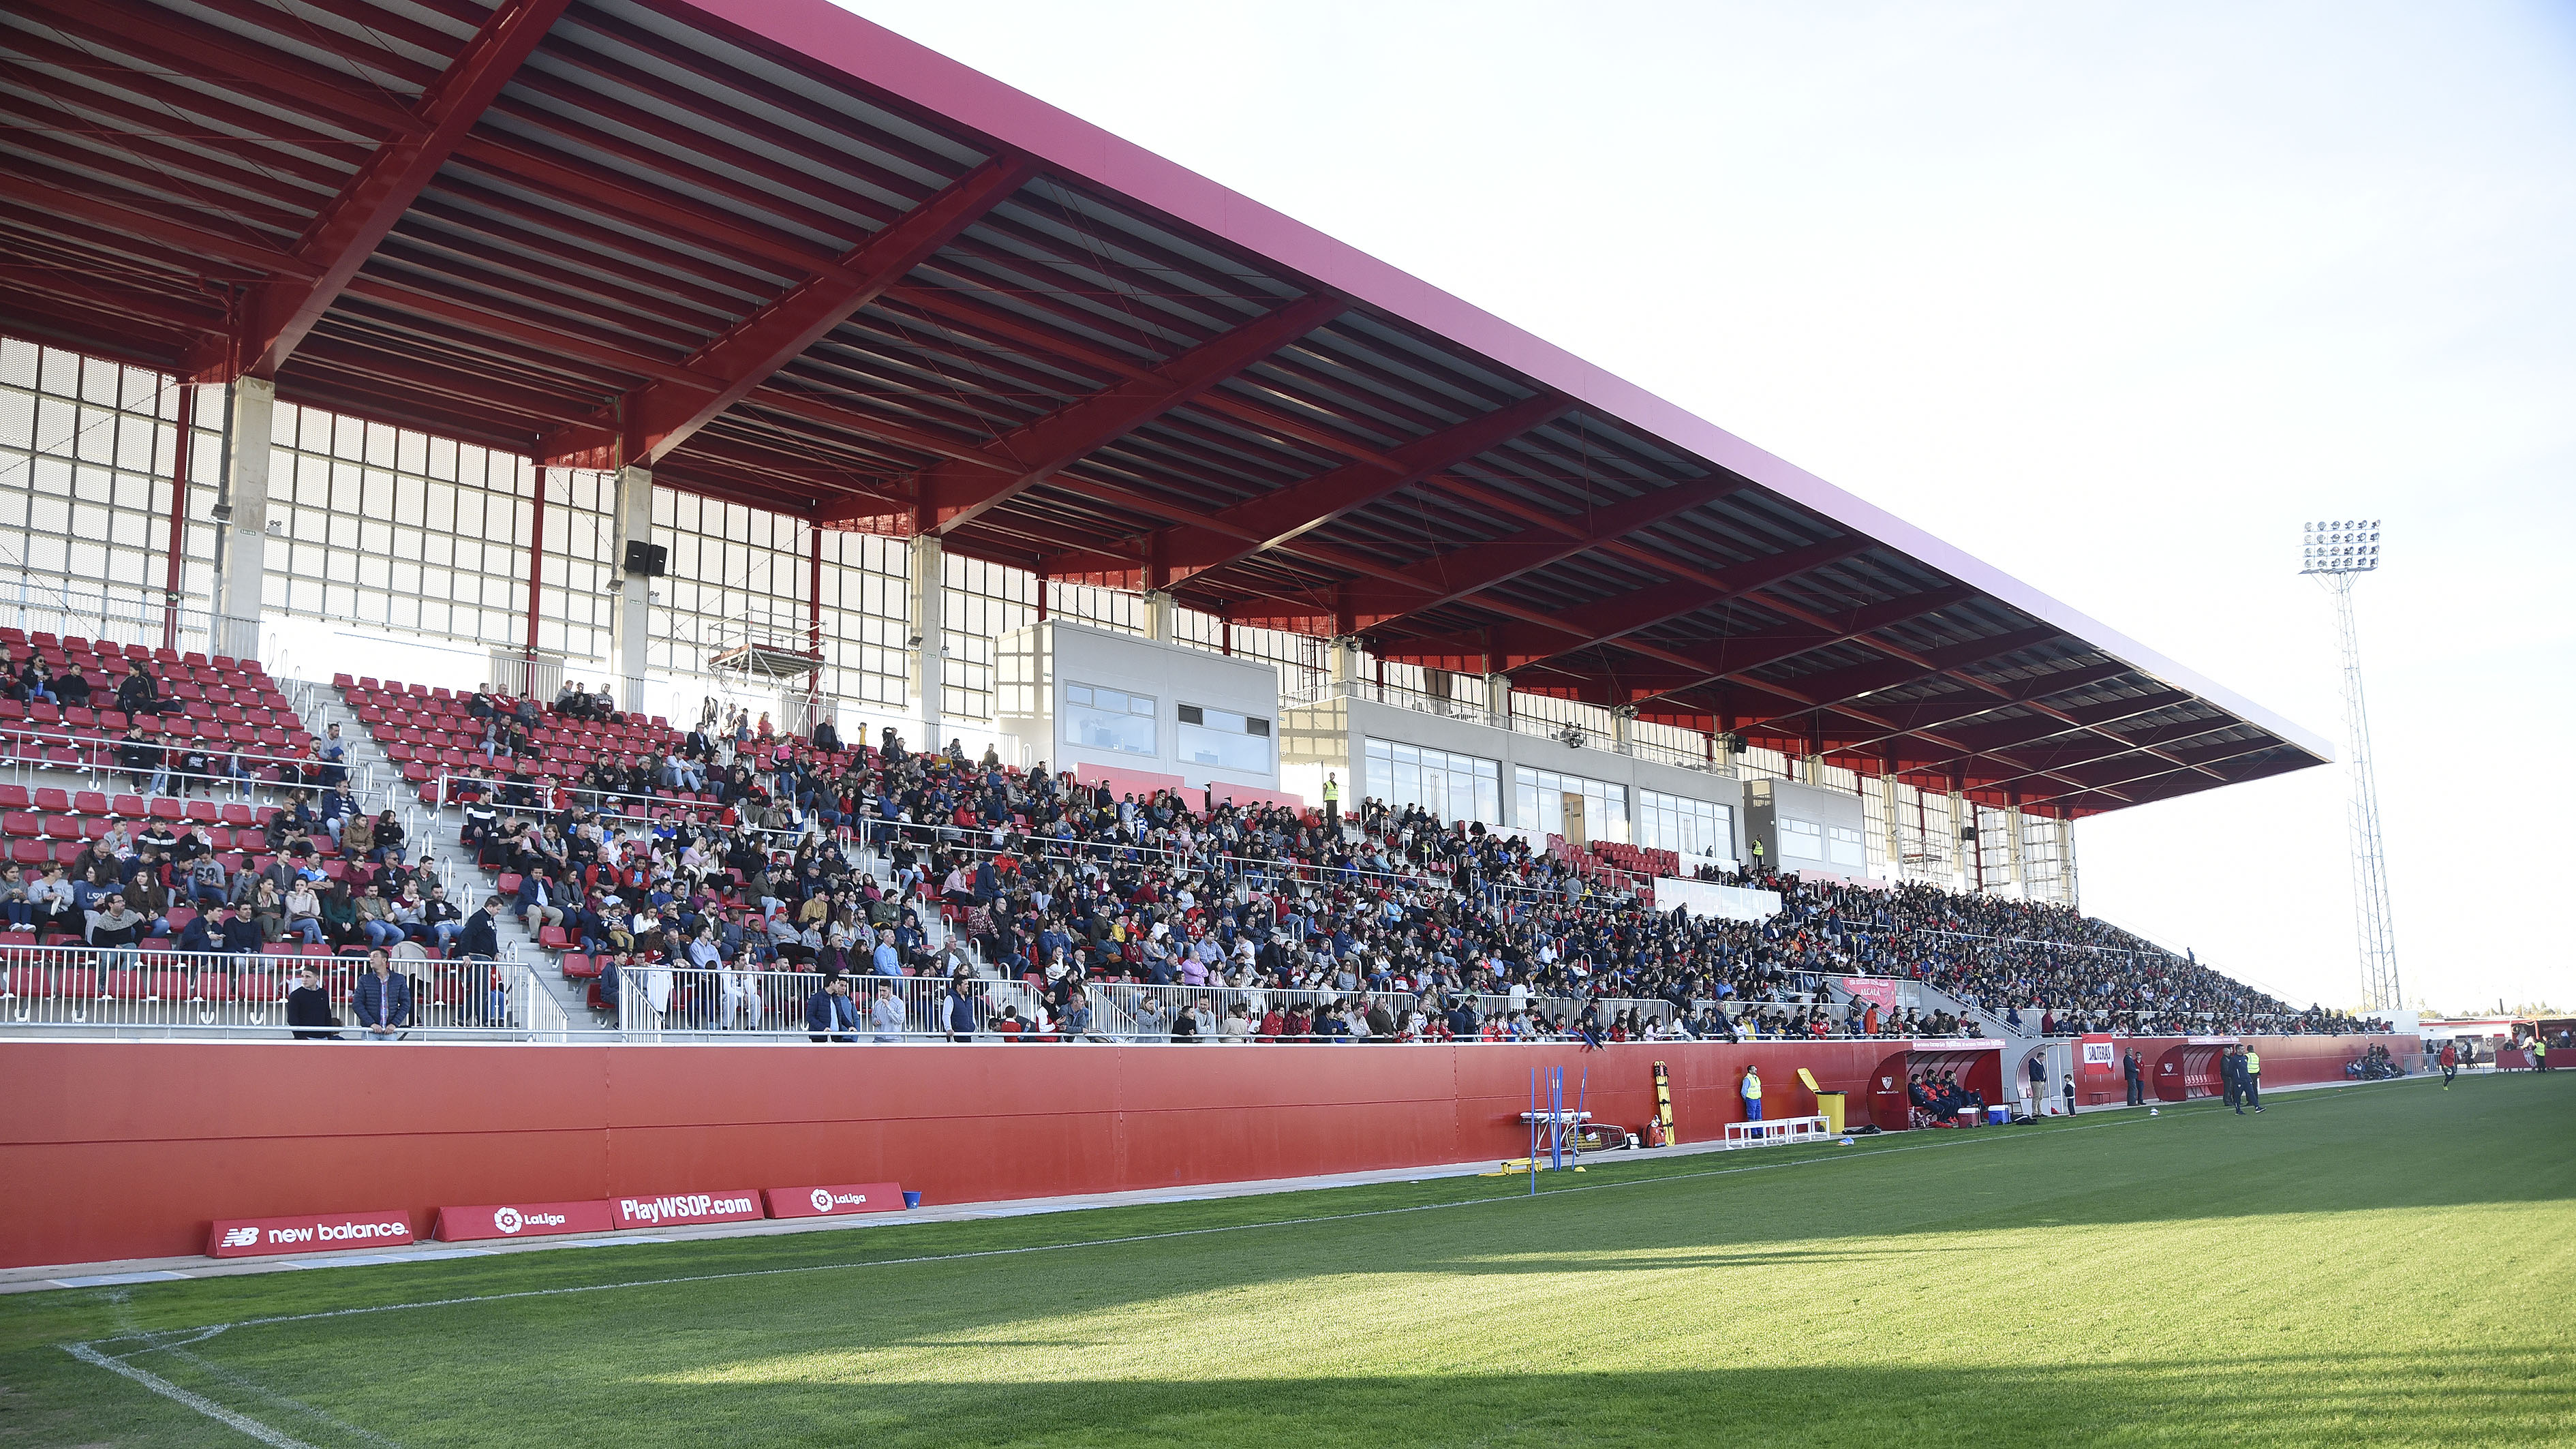 Estadio Jesús Navas in the Ciudad Deportiva